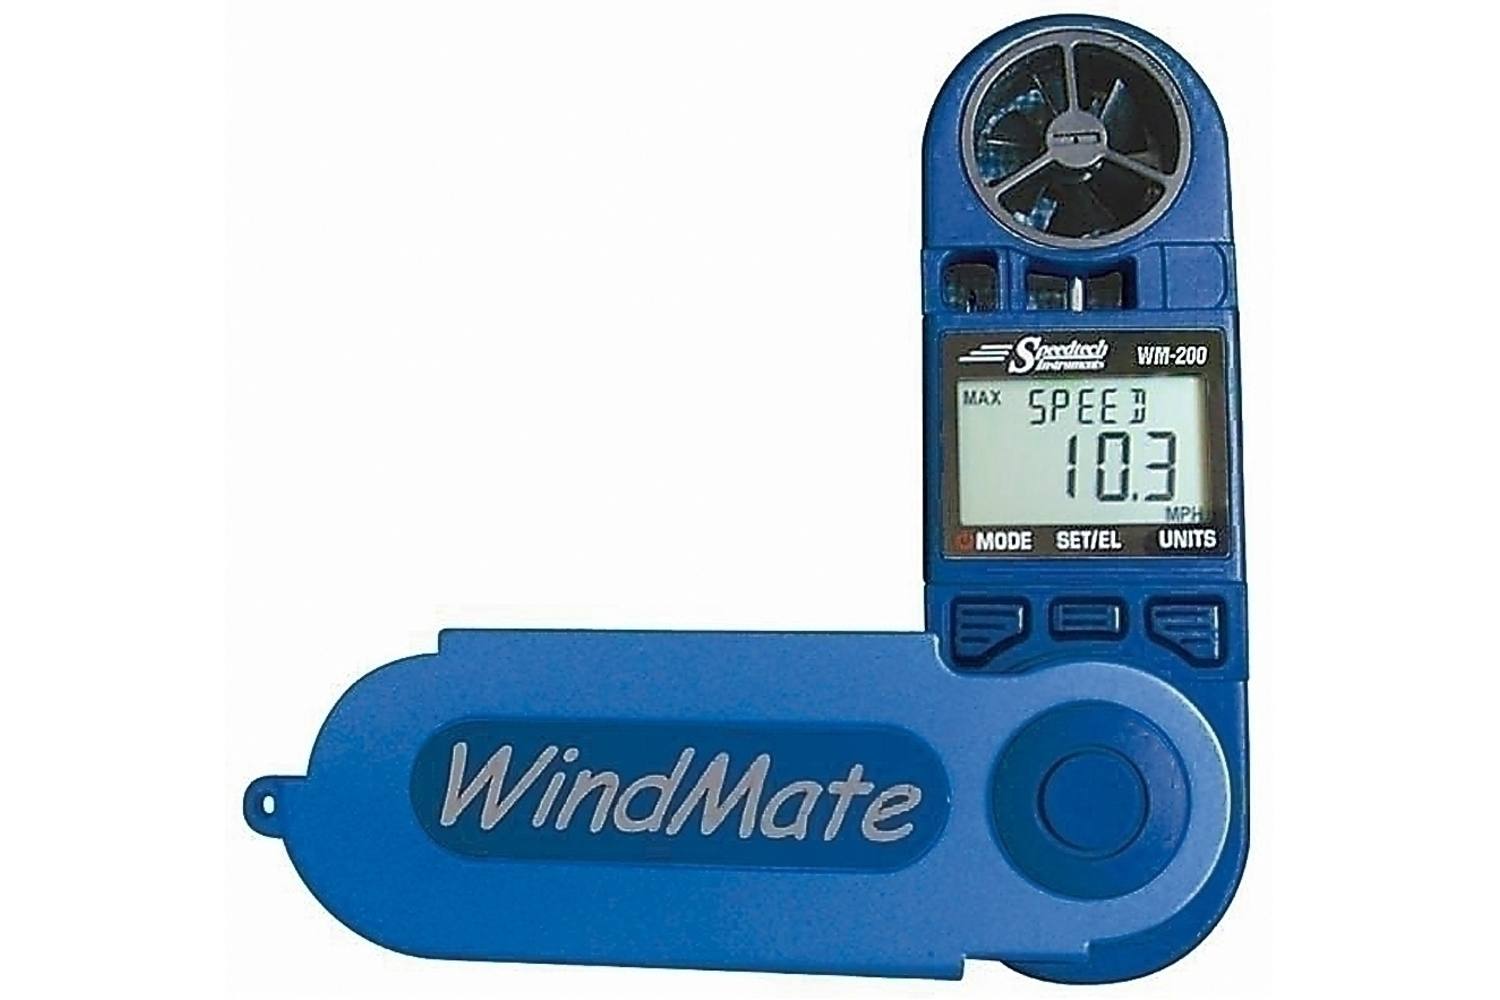 Zakwindmeter Windmate 200 N